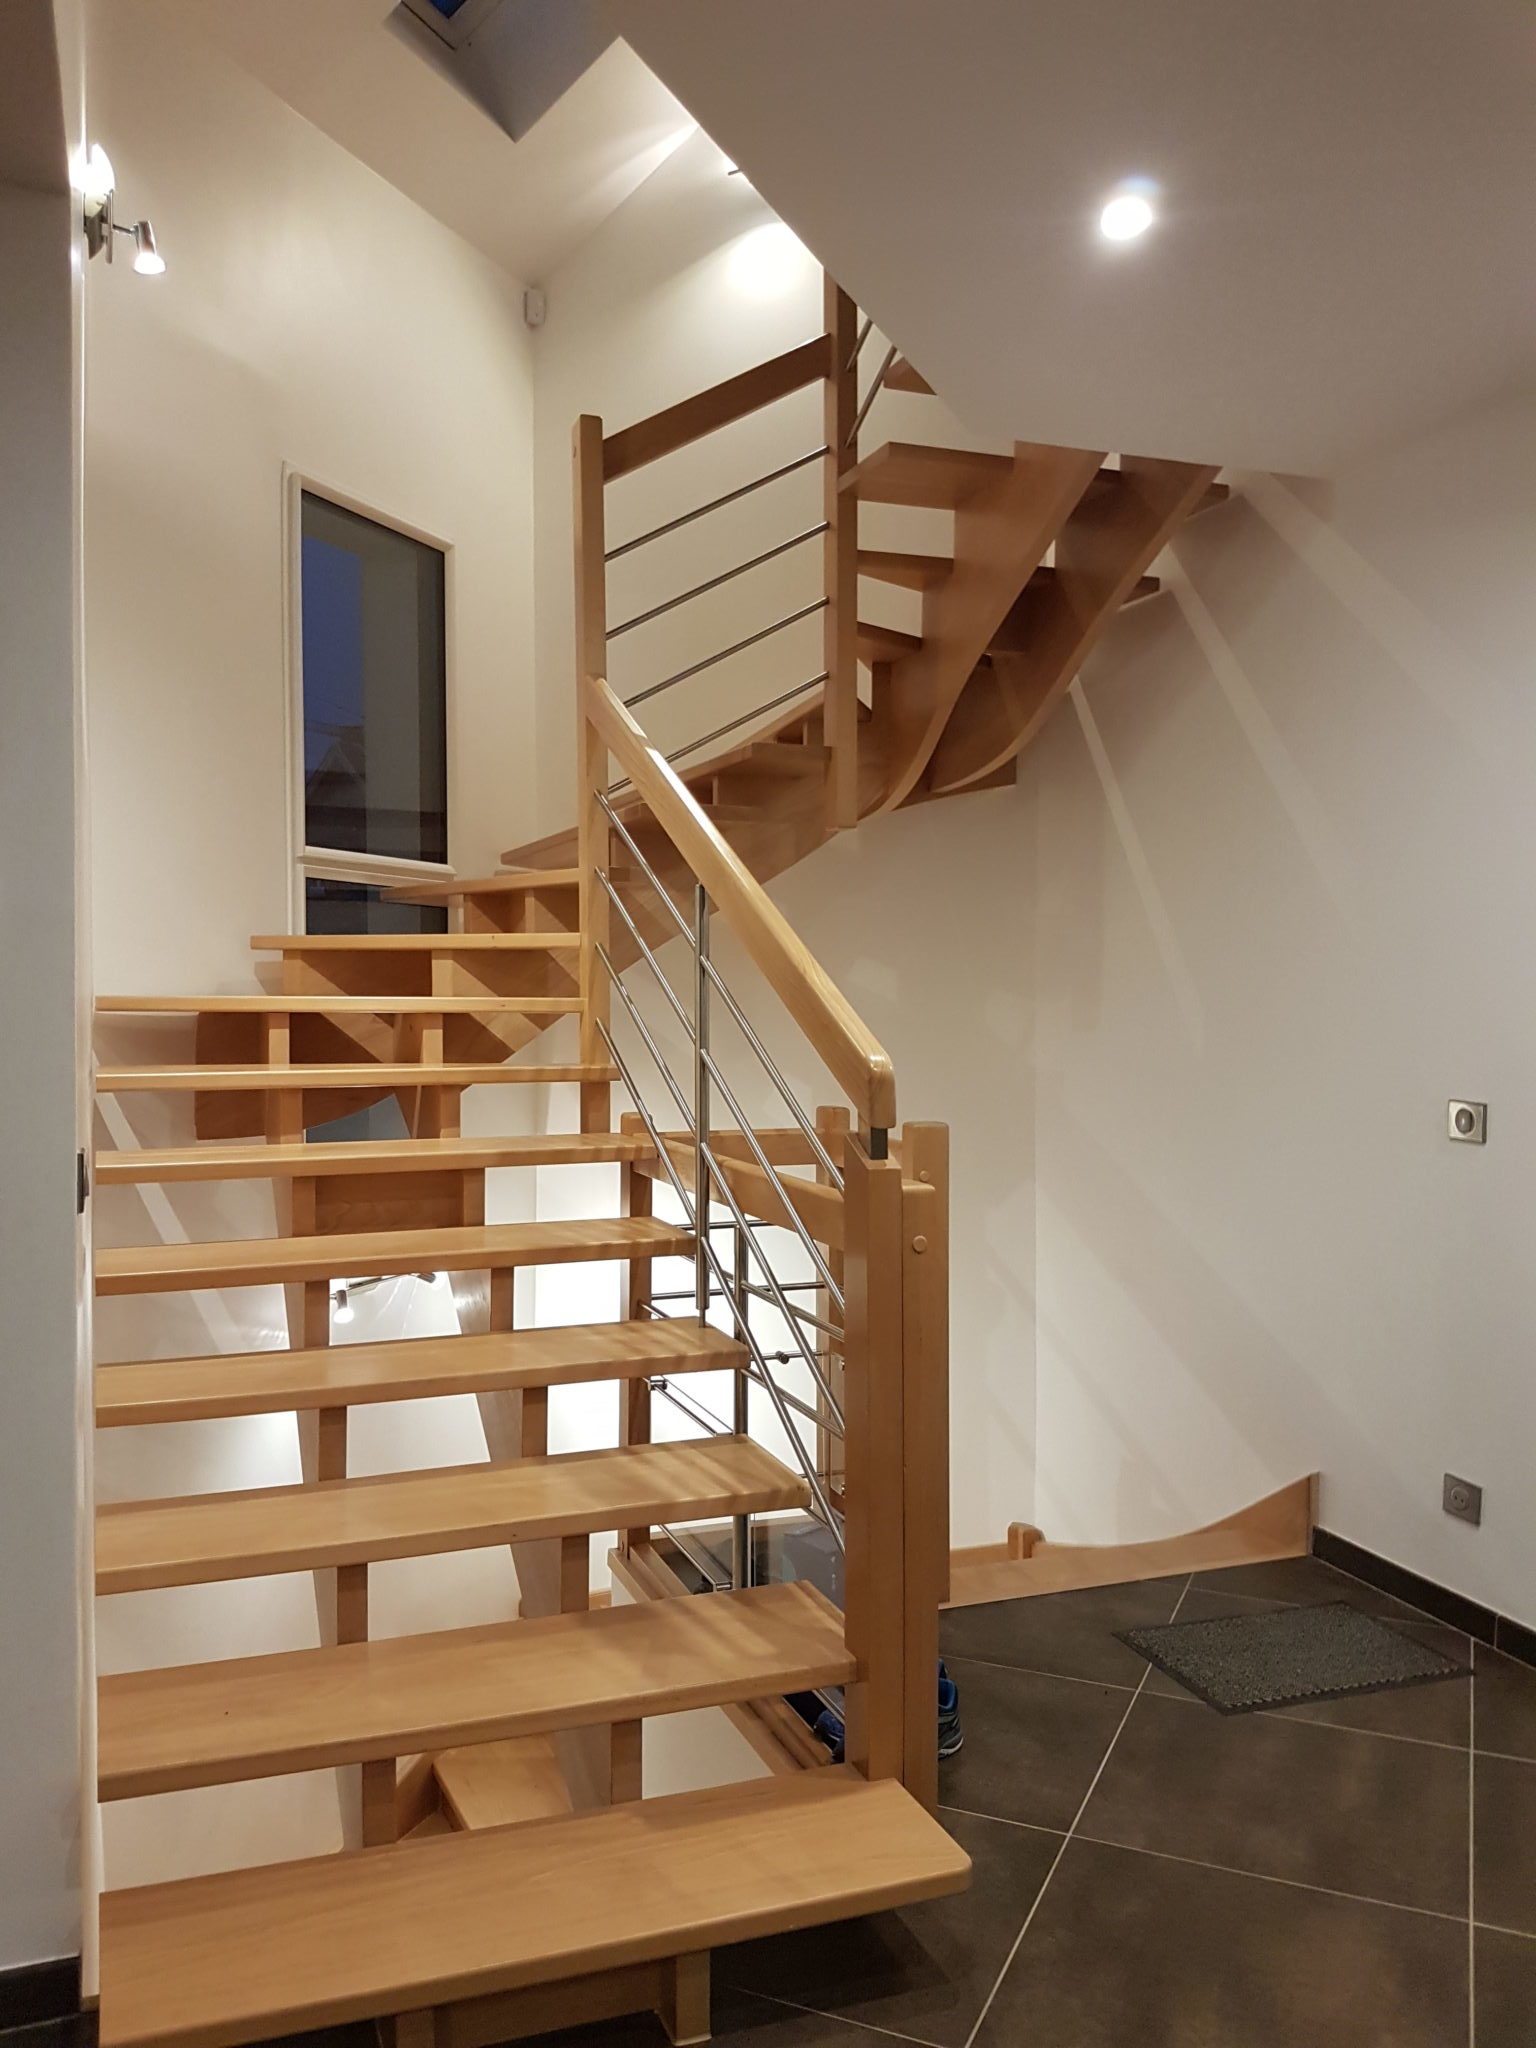 Photo de l'escalier intérieur en bois et acier pour cette maison individuelle moderne